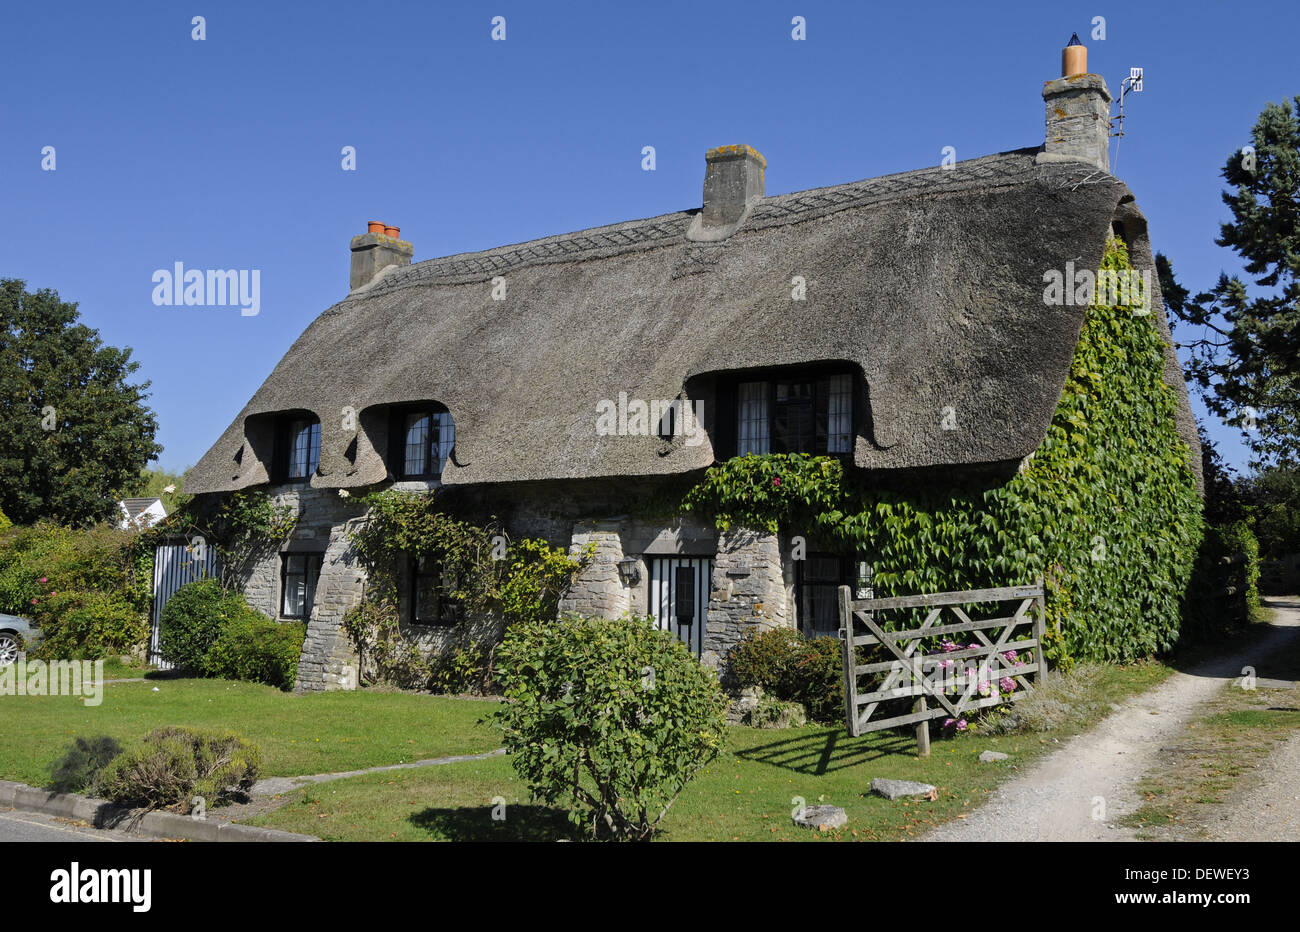 Thatched Cottage dans le village de Corfe à l'île de Purbeck Dorset Angleterre Banque D'Images